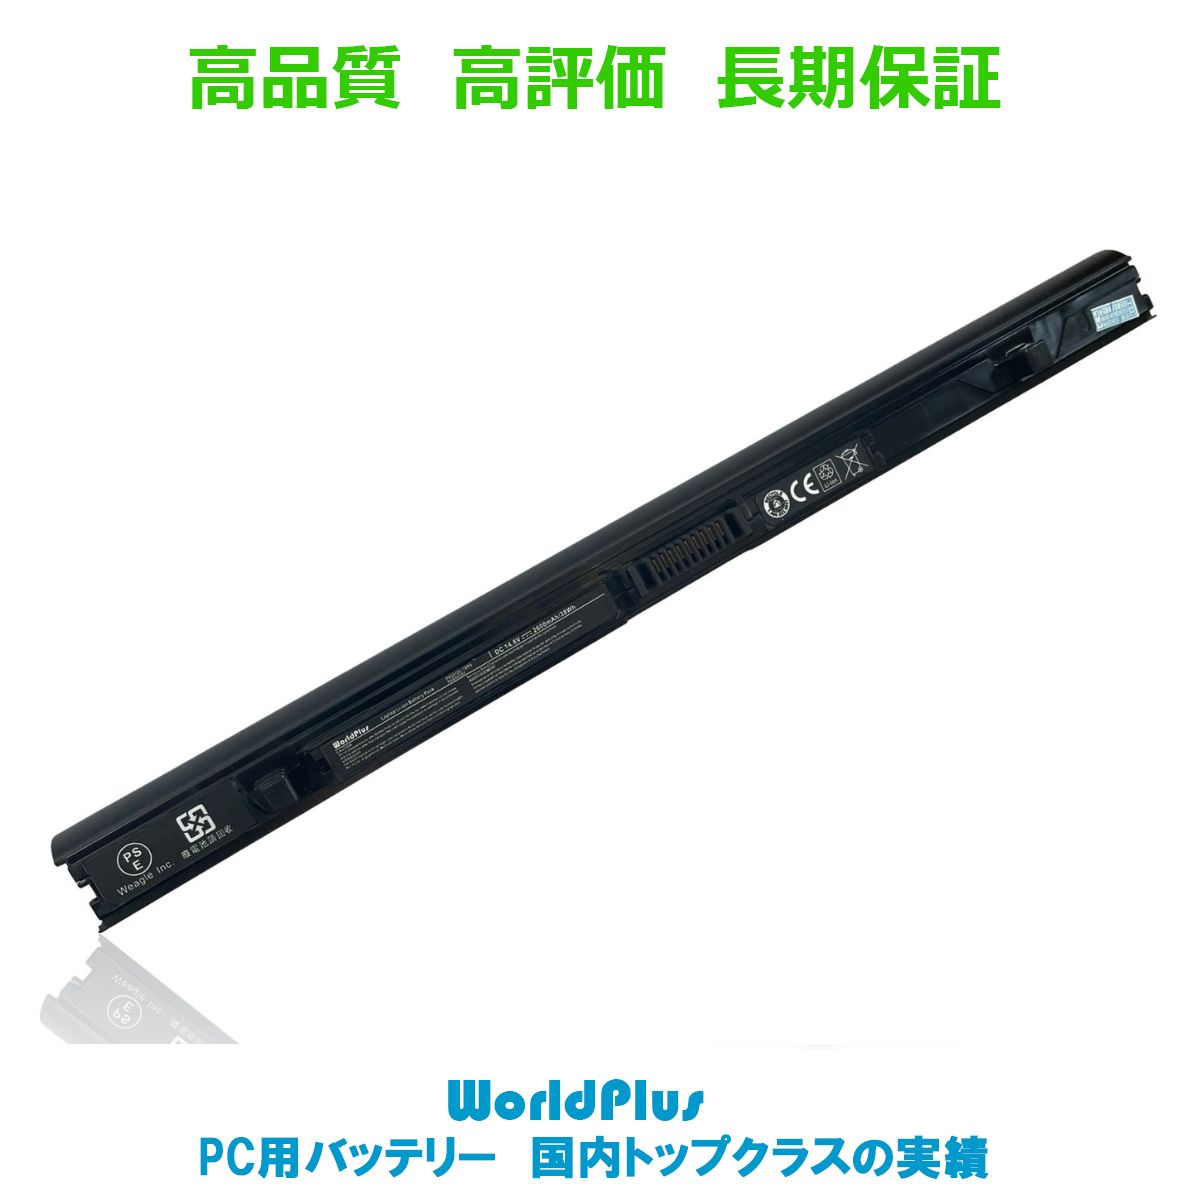 【純正】Stream x360 11-p015ni 11.4V 43Wh hp ノート PC ノートパソコン 純正 交換バッテリー